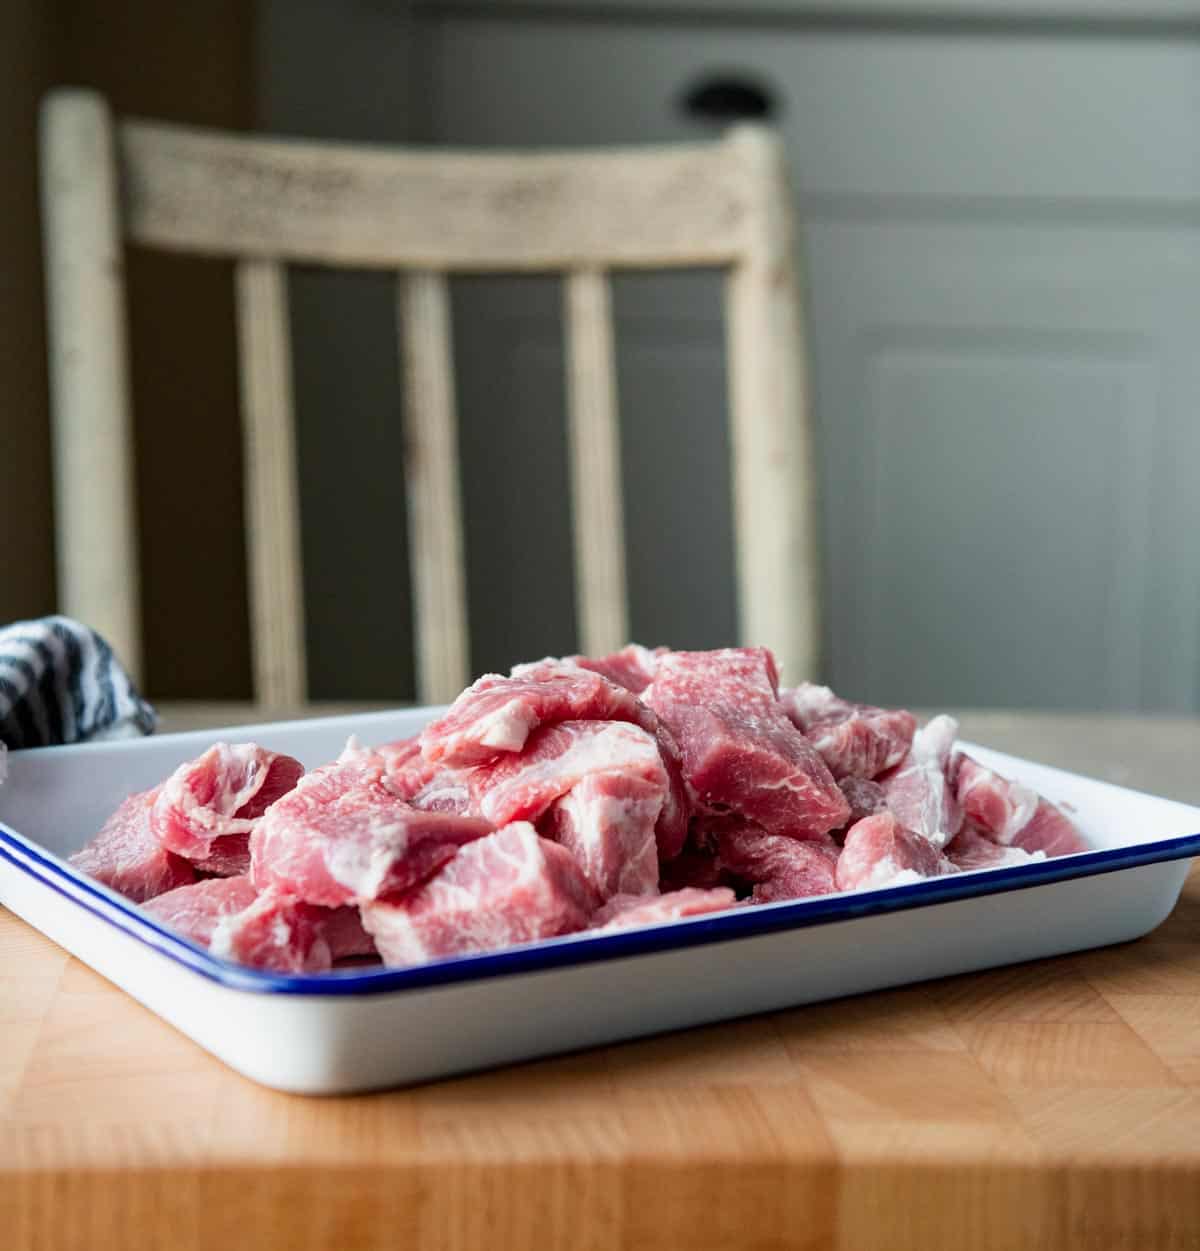 Cubed pork shoulder on a tray.